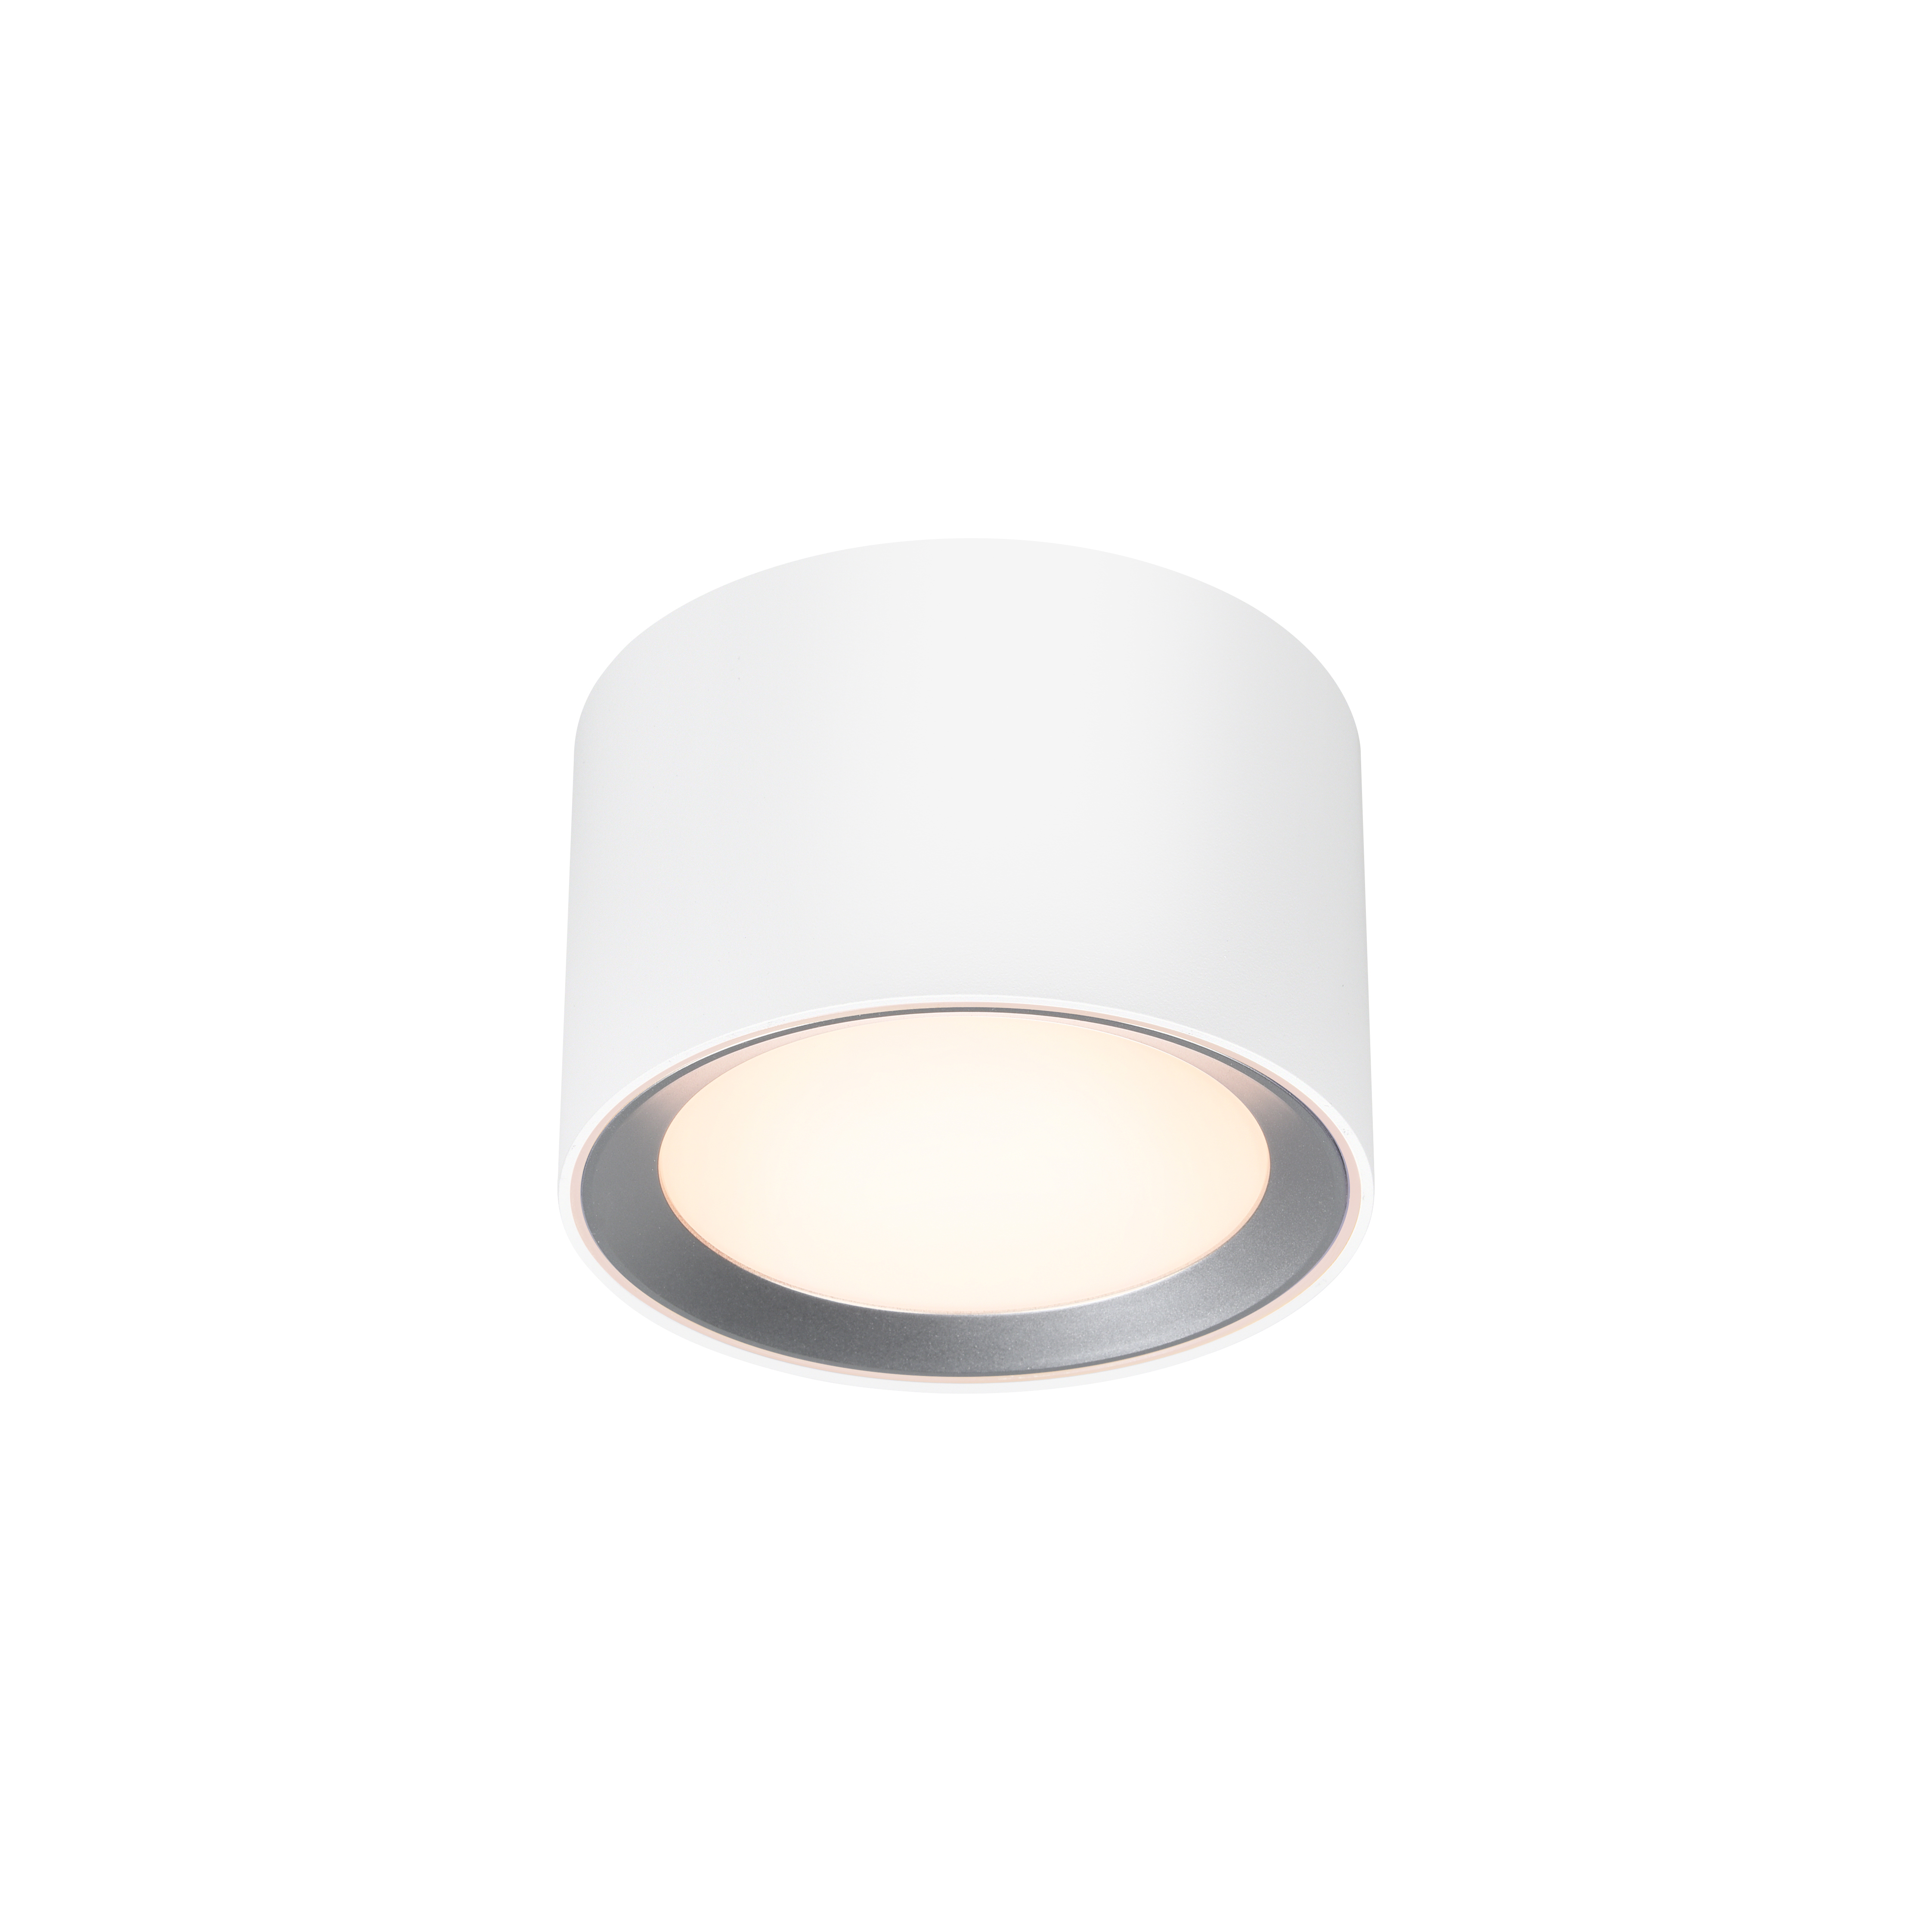 Landon White light | | Ceiling Smart